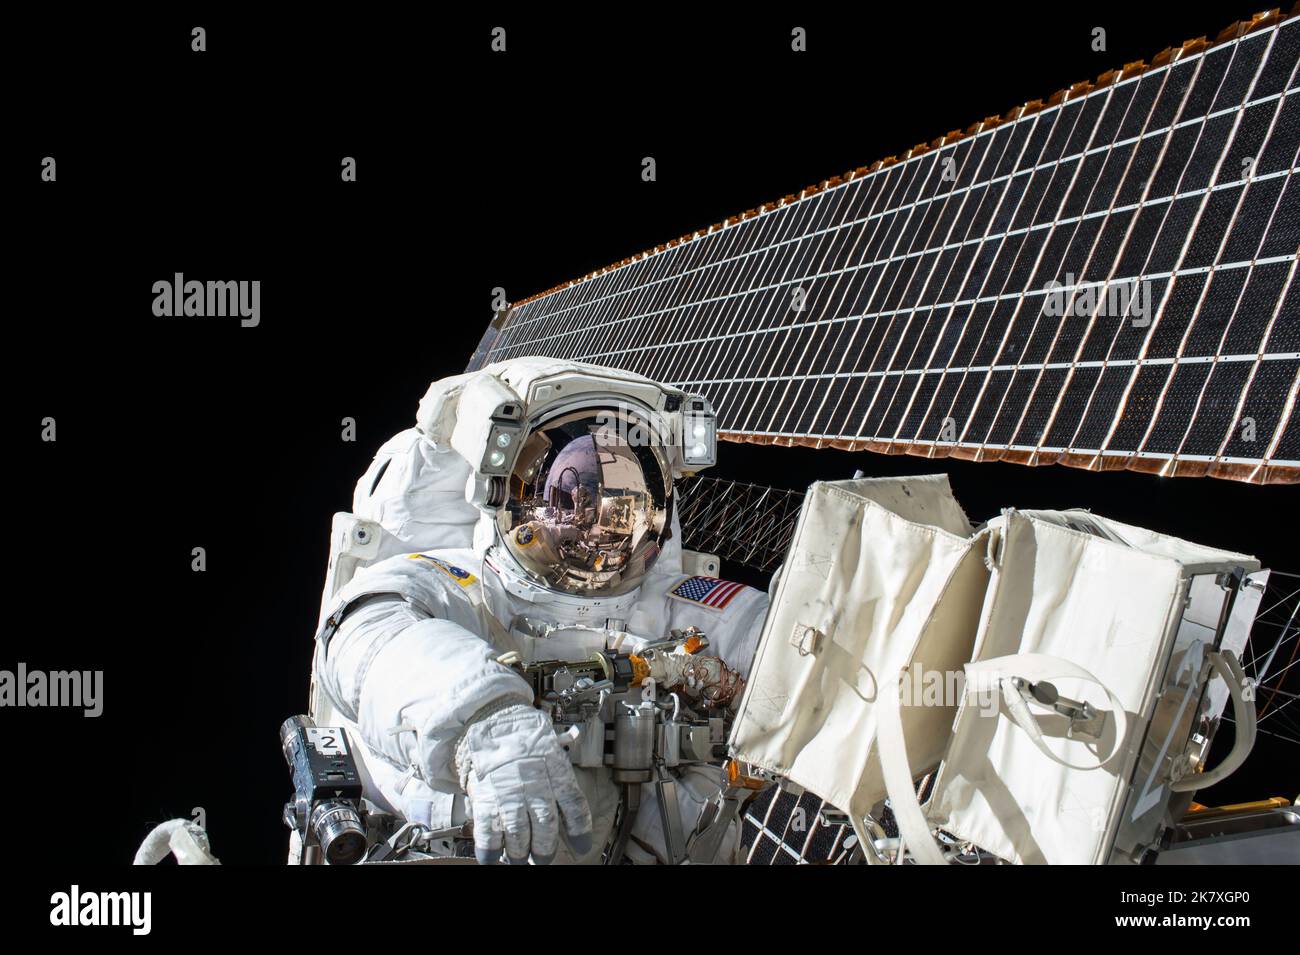 Il 6 novembre 2015, gli astronauti della NASA Scott Kelly e Kjell Lindgren hanno trascorso 7 ore e 48 minuti a lavorare fuori dalla Stazione spaziale Internazionale sulla passerella spaziale 190th a sostegno dell'assemblaggio e della manutenzione della stazione. Gli astronauti hanno riportato il sistema di raffreddamento dell'ammoniaca del puntone portuale (P6) alla sua configurazione originale, il compito principale della rete spaziale. Hanno anche riportato l'ammoniaca ai livelli desiderati nei sistemi di innesco e di backup. Il vessetto era il secondo per entrambi gli astronauti. I membri dell'equipaggio hanno trascorso un totale di 1.192 ore e 4 minuti a lavorare al di fuori del laboratorio orbitale. Foto Stock